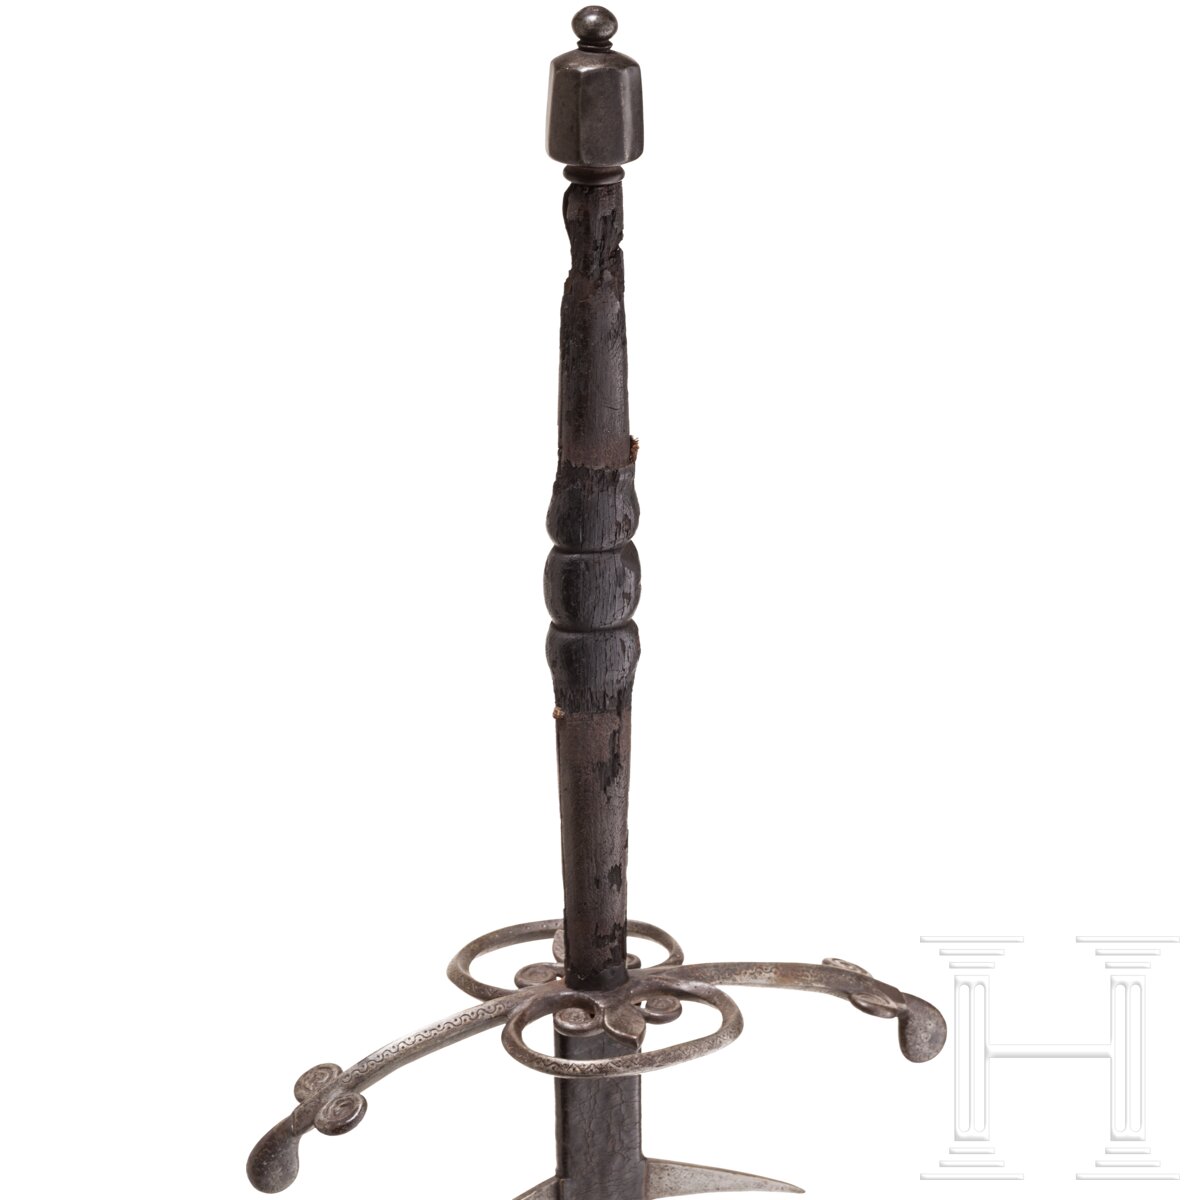 Geflammter Bidenhänder, süddeutsch, um 1600 - Image 5 of 10